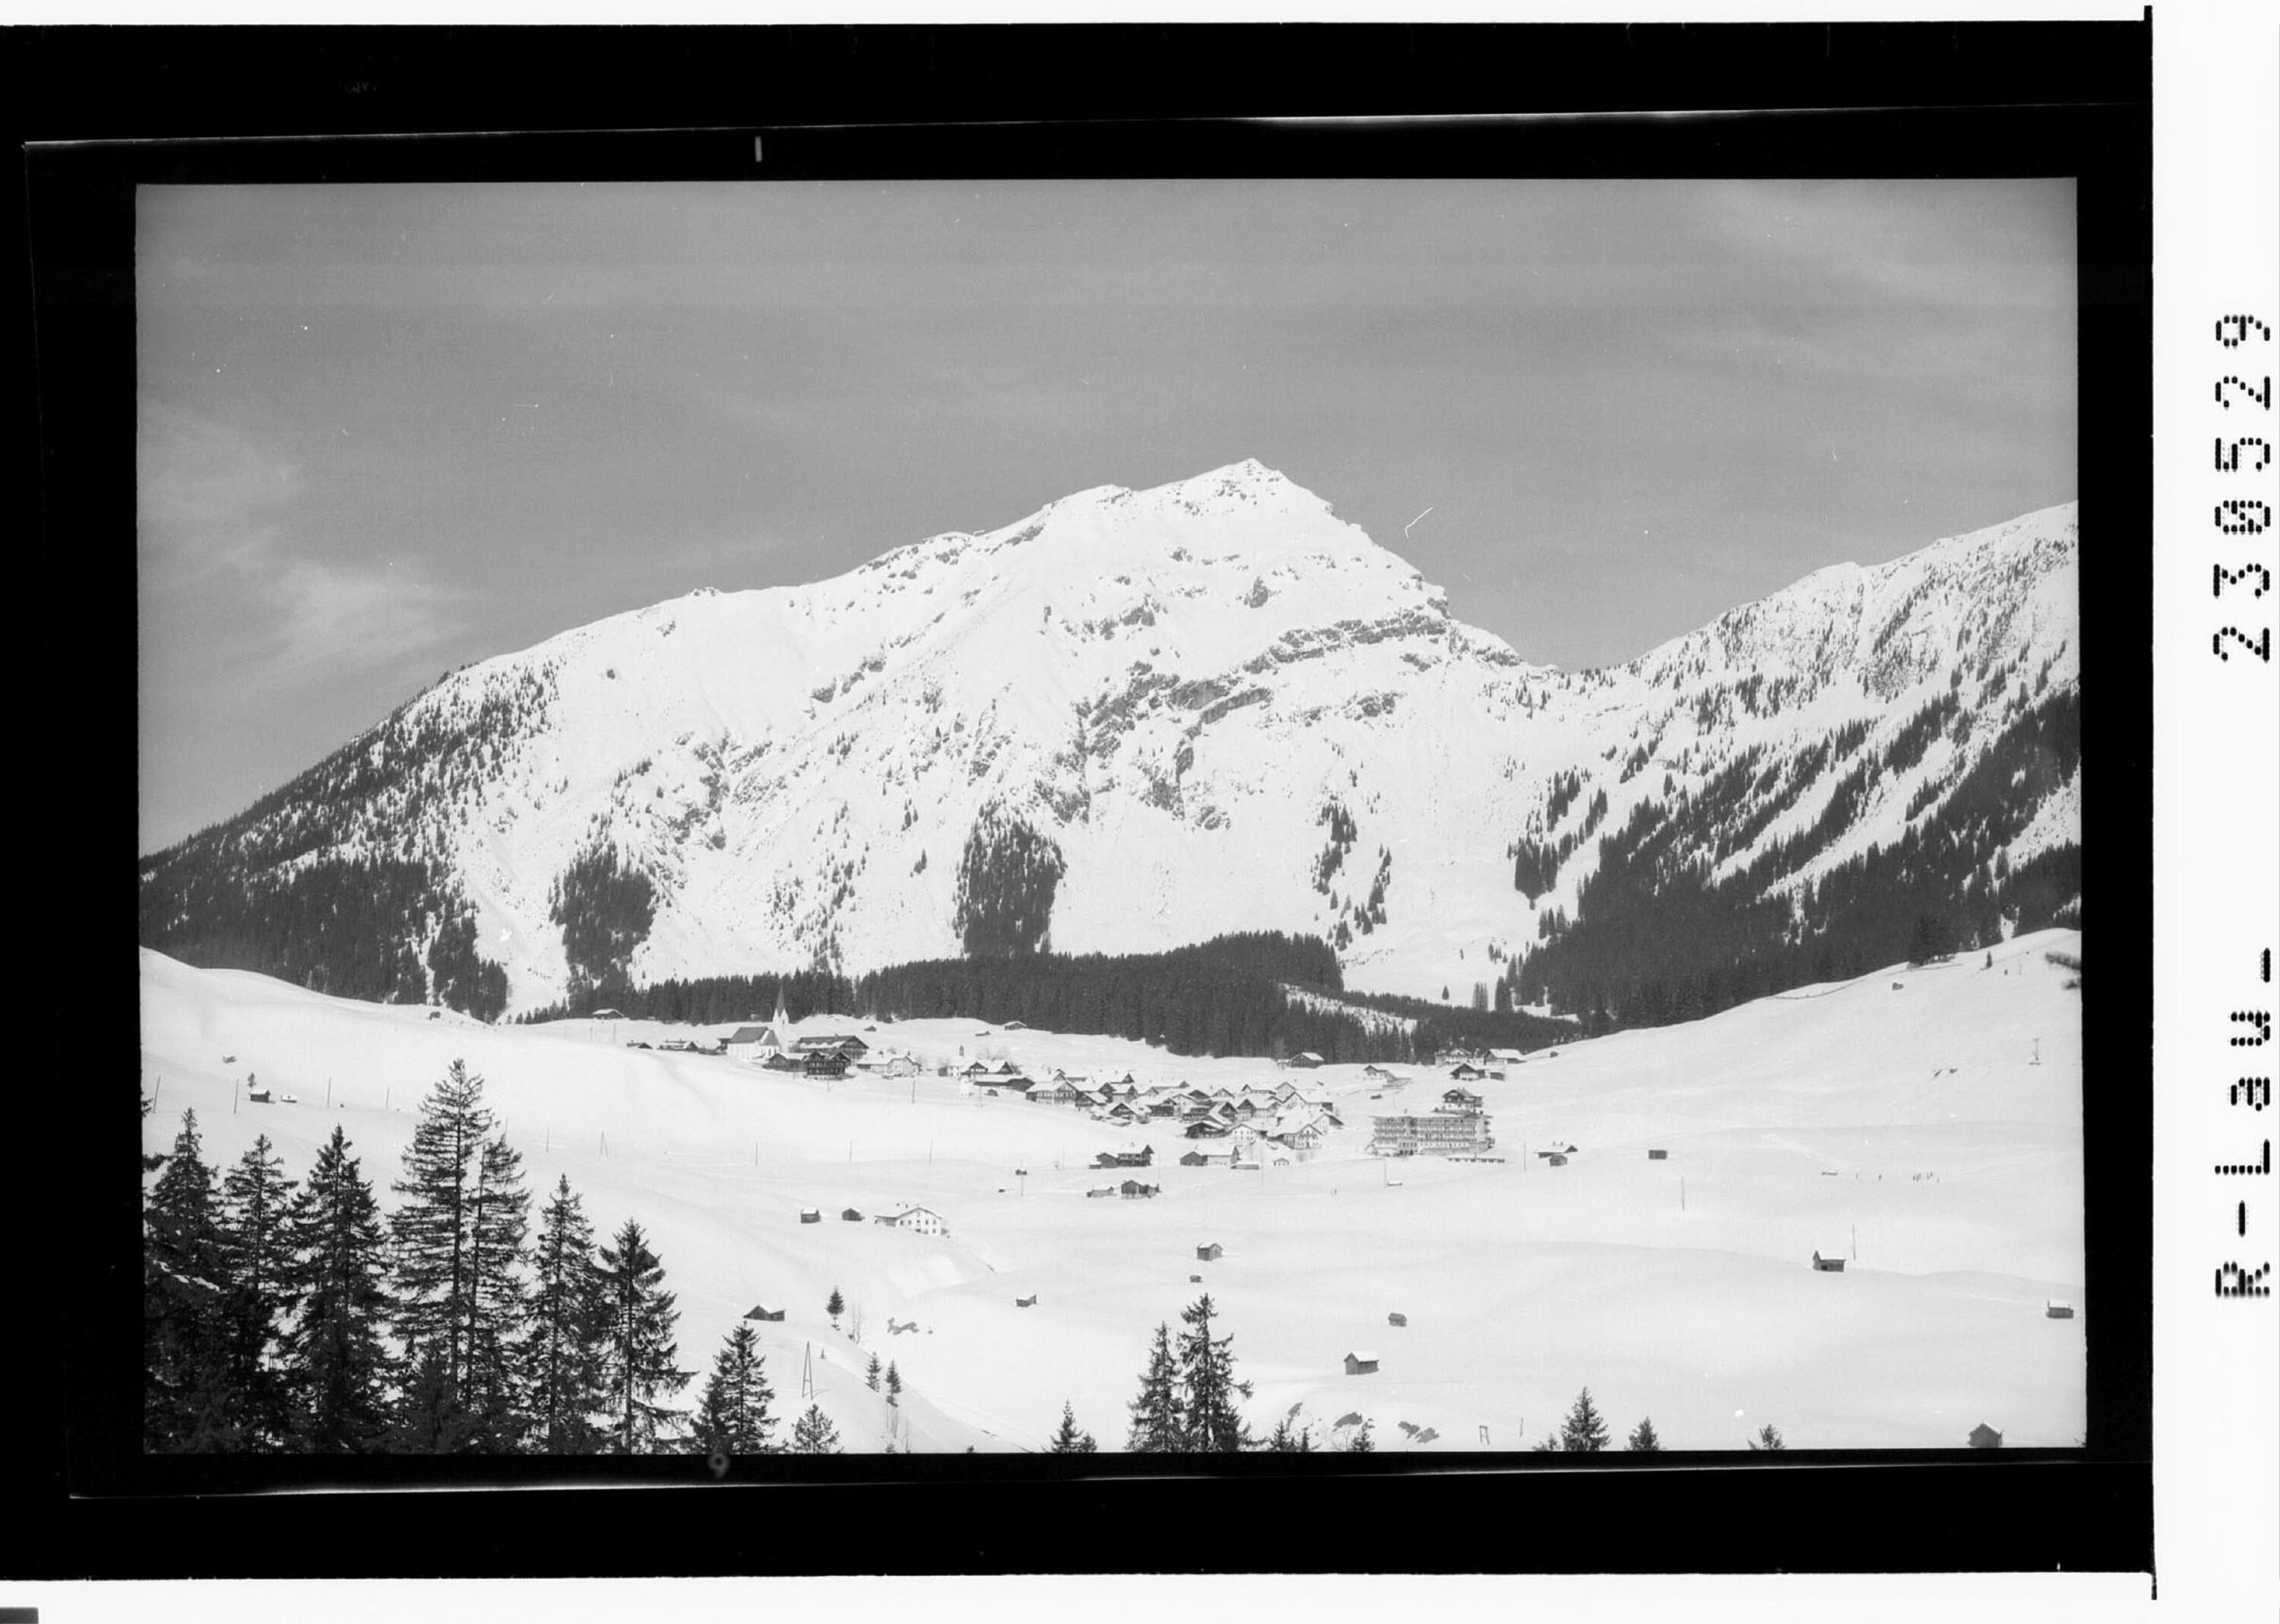 Wintersportplatz Berwang - Tirol 1340 m / Thaneller></div>


    <hr>
    <div class=